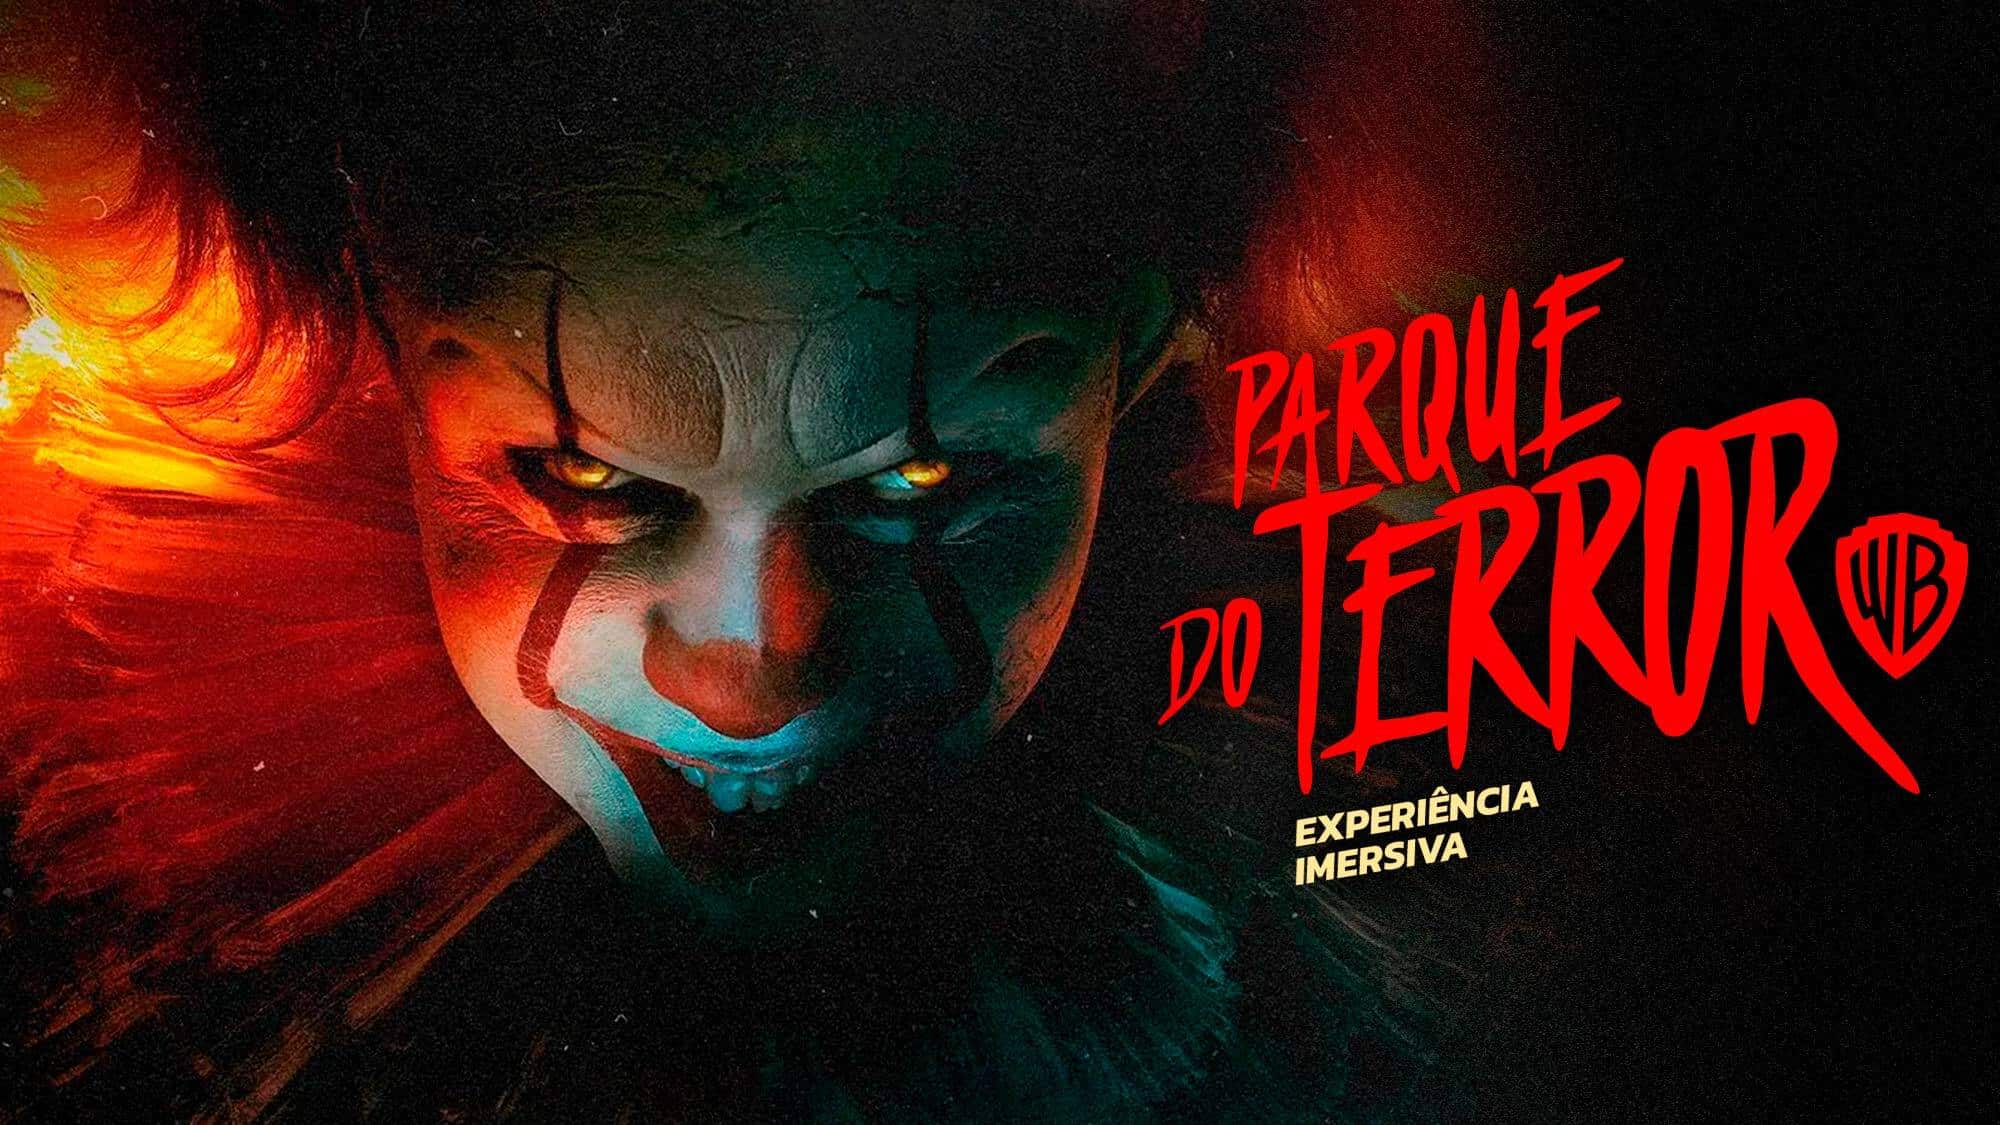 Warner Bros anuncia Parque do Terror em SP - GKPB - Geek Publicitário